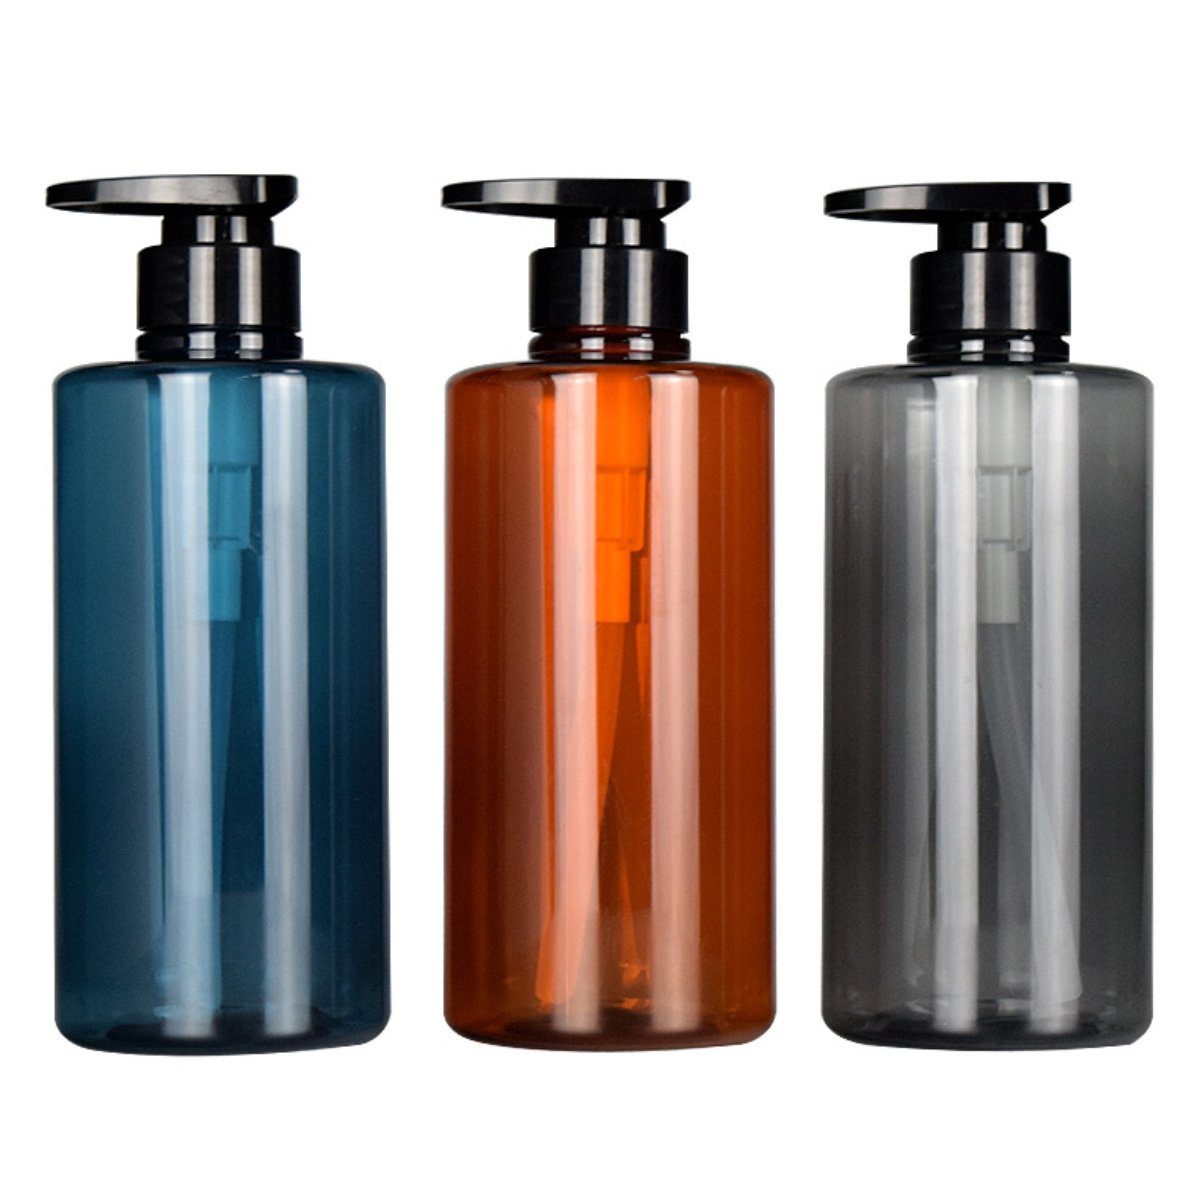 Blau2 und Seifenspender,Reiseflaschen Seifenspender Küche Jormftte Set,Duschgelspender,für Bad